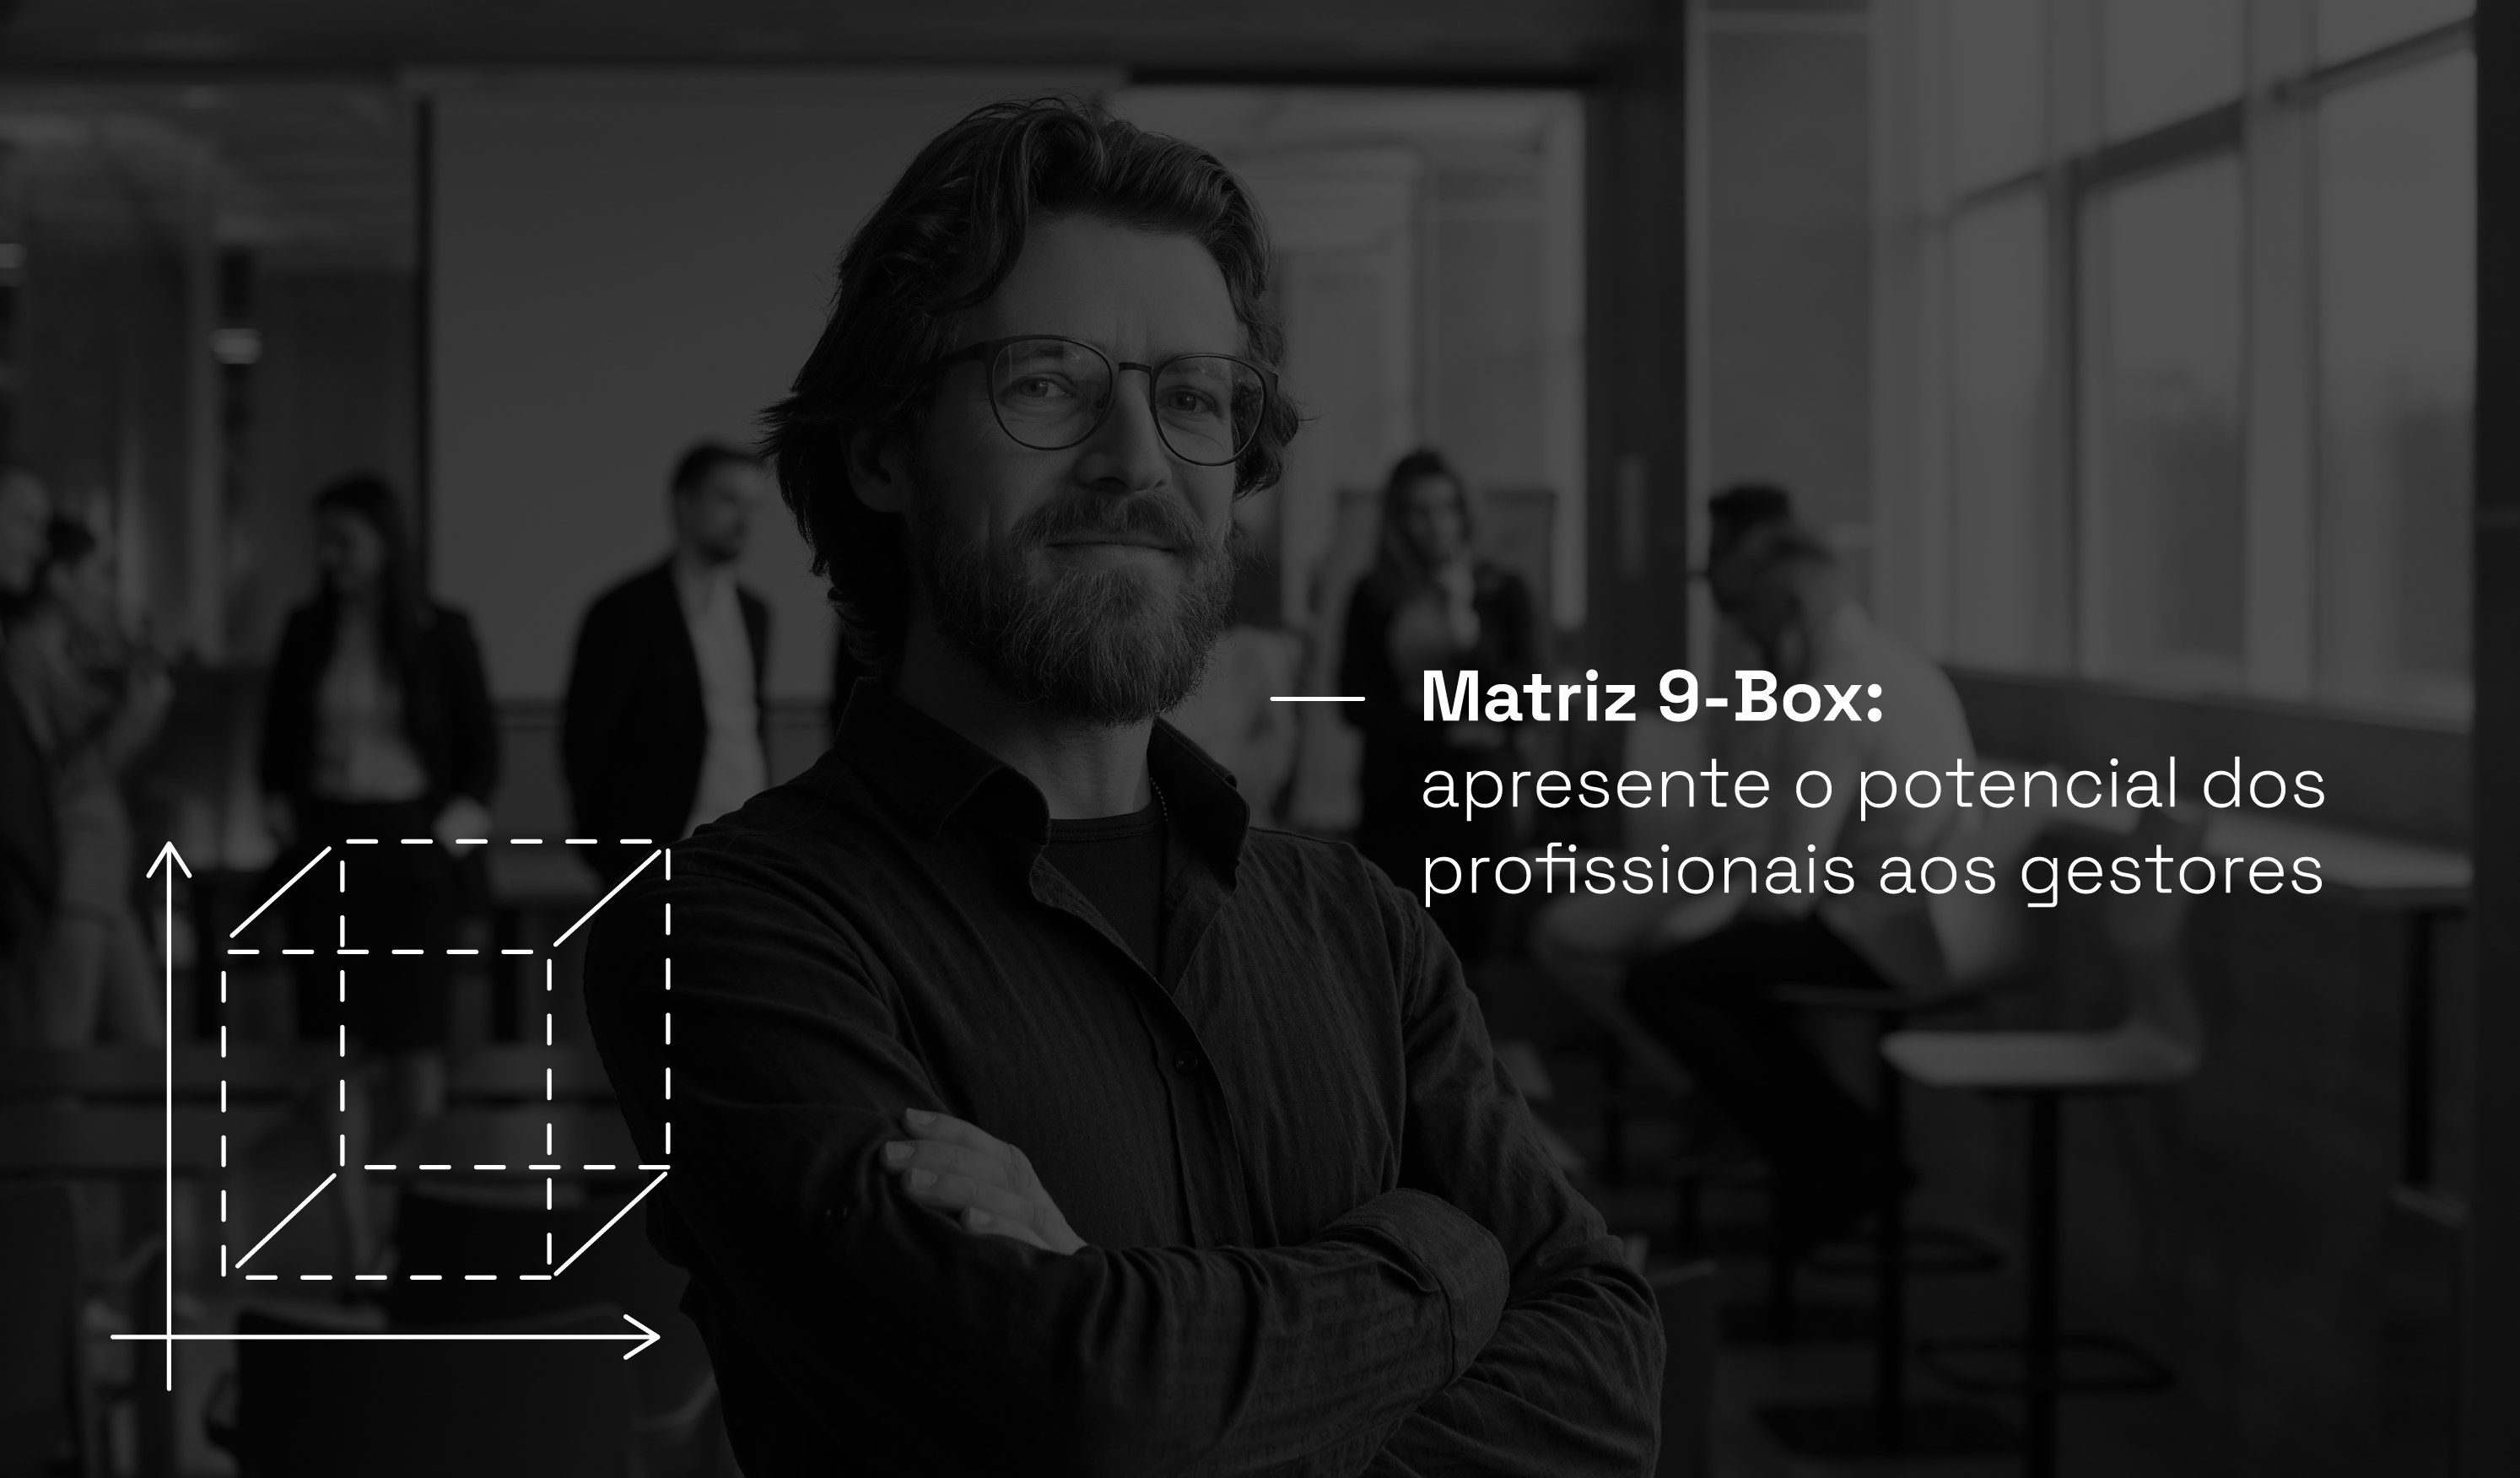 homem no escritório com título ao lado: Matriz 9-Box: apresente o potencial dos profissionais aos gestores